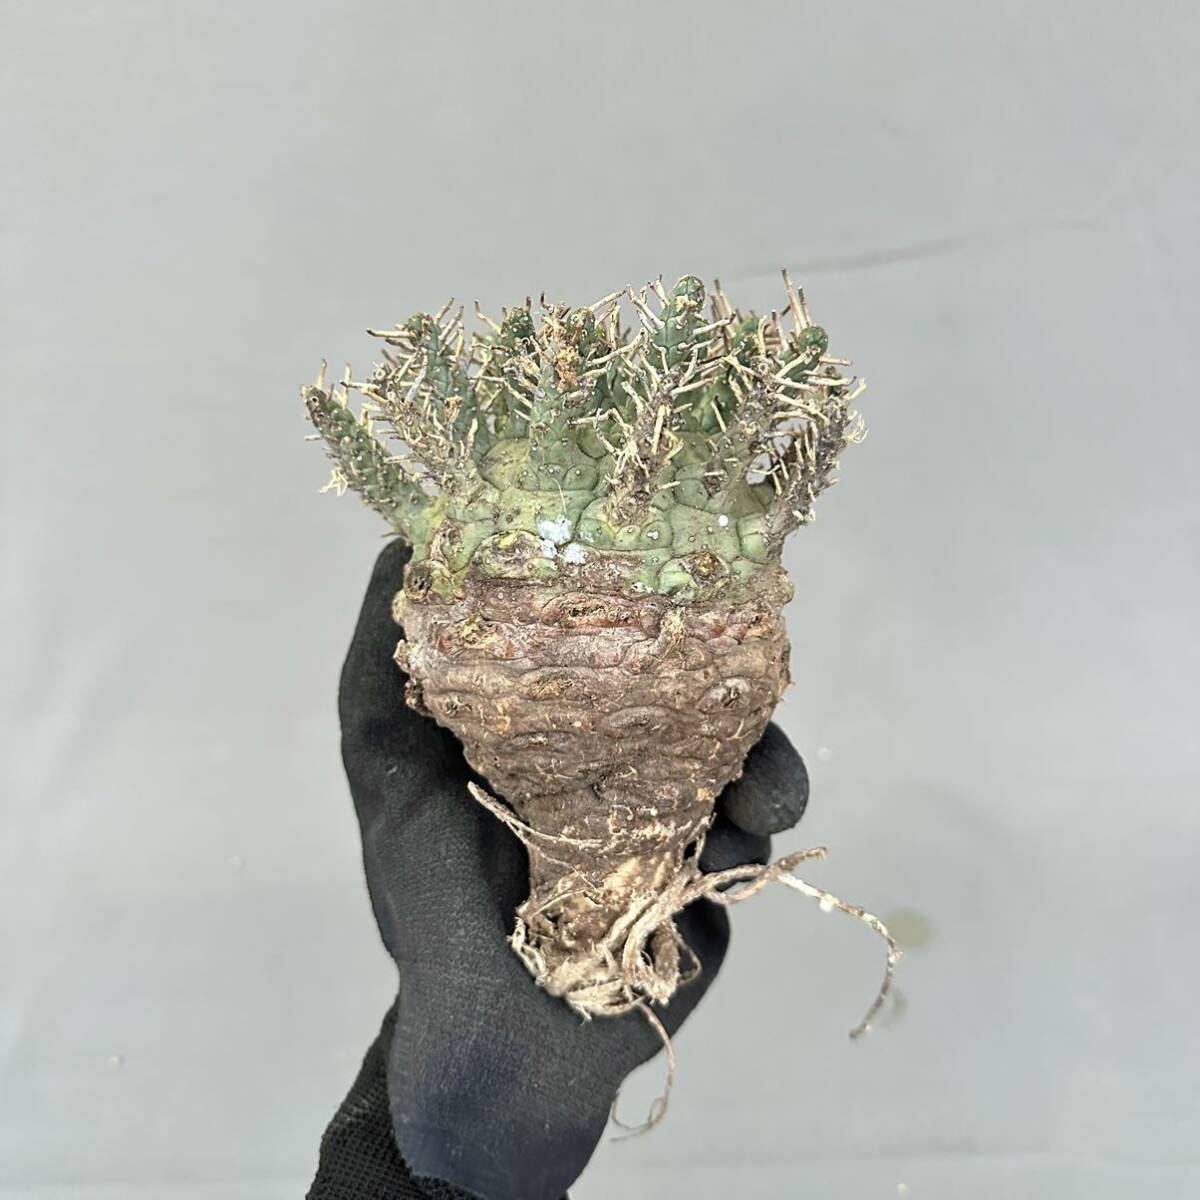 9 Euphorbia decepta / You fo рубин atesepta зеленый . шар [ поиск ]f ska жевательная резинка талон sis шероховатость Ora Hope Town ensis осьминог было использовано gla сверло s